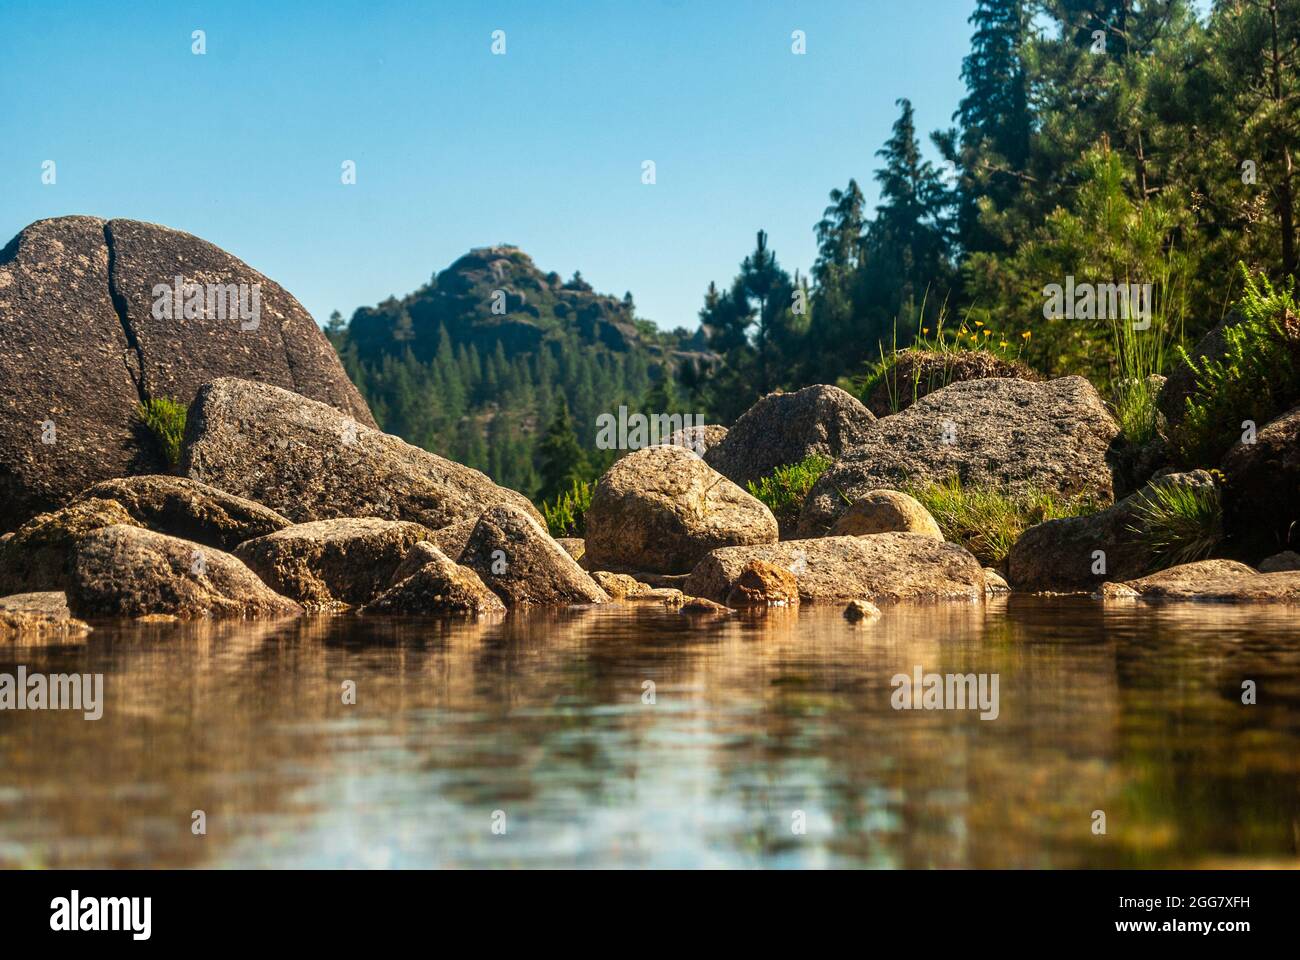 Panoramablick auf den Berg und die Felsen, die sich im ruhigen Flusswasser spiegeln - Copy Space, Portugal, Nationalpark von Geres, selektiver Fokus Stockfoto